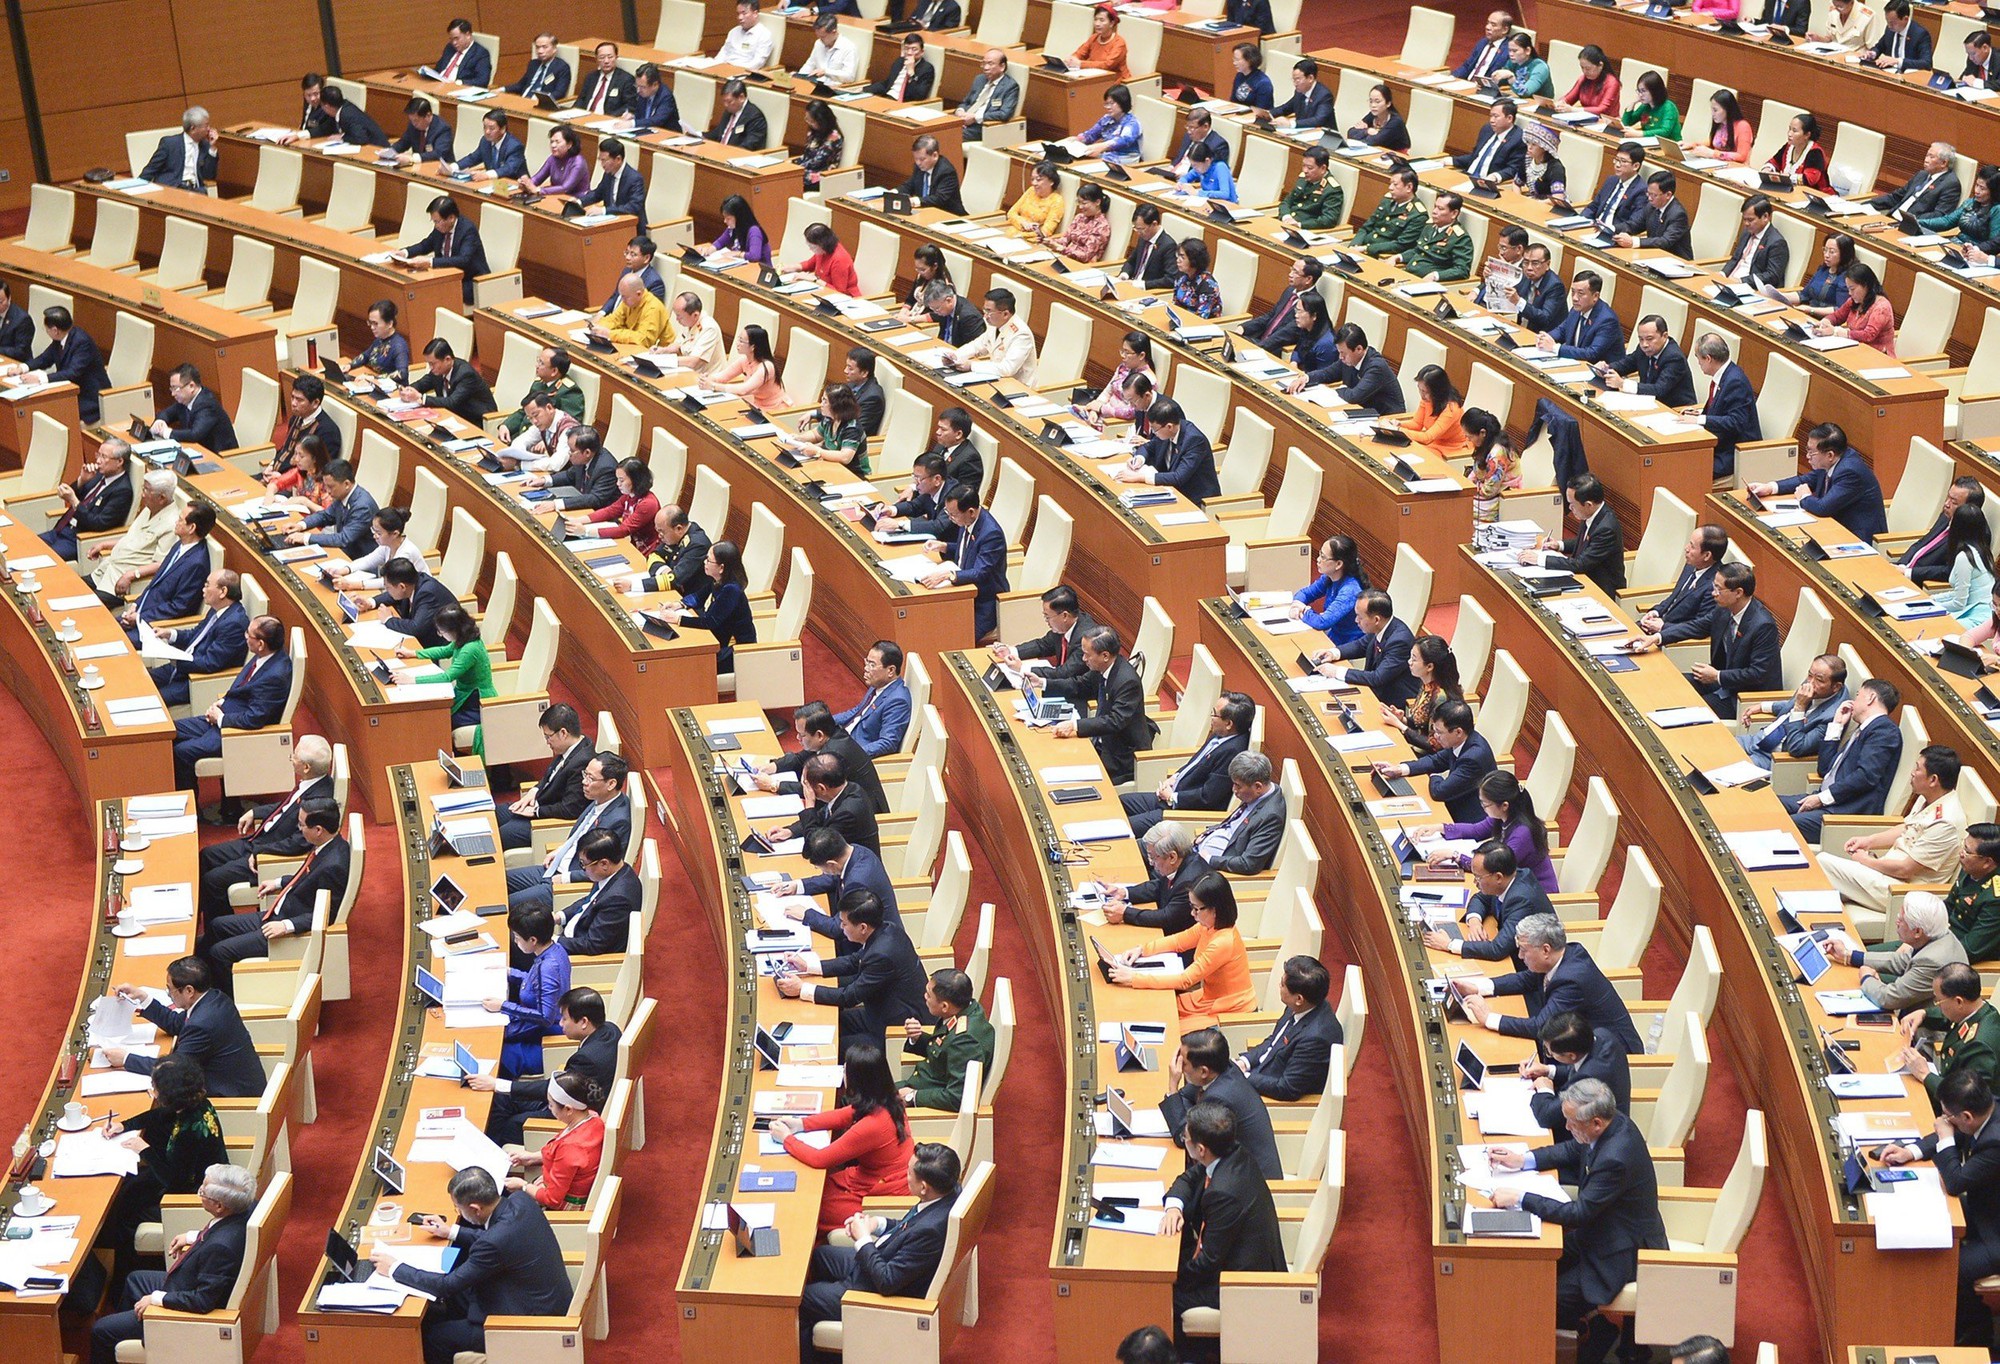 Quốc hội họp riêng để xem xét công tác nhân sự vào ngày 24/6 - Ảnh 1.